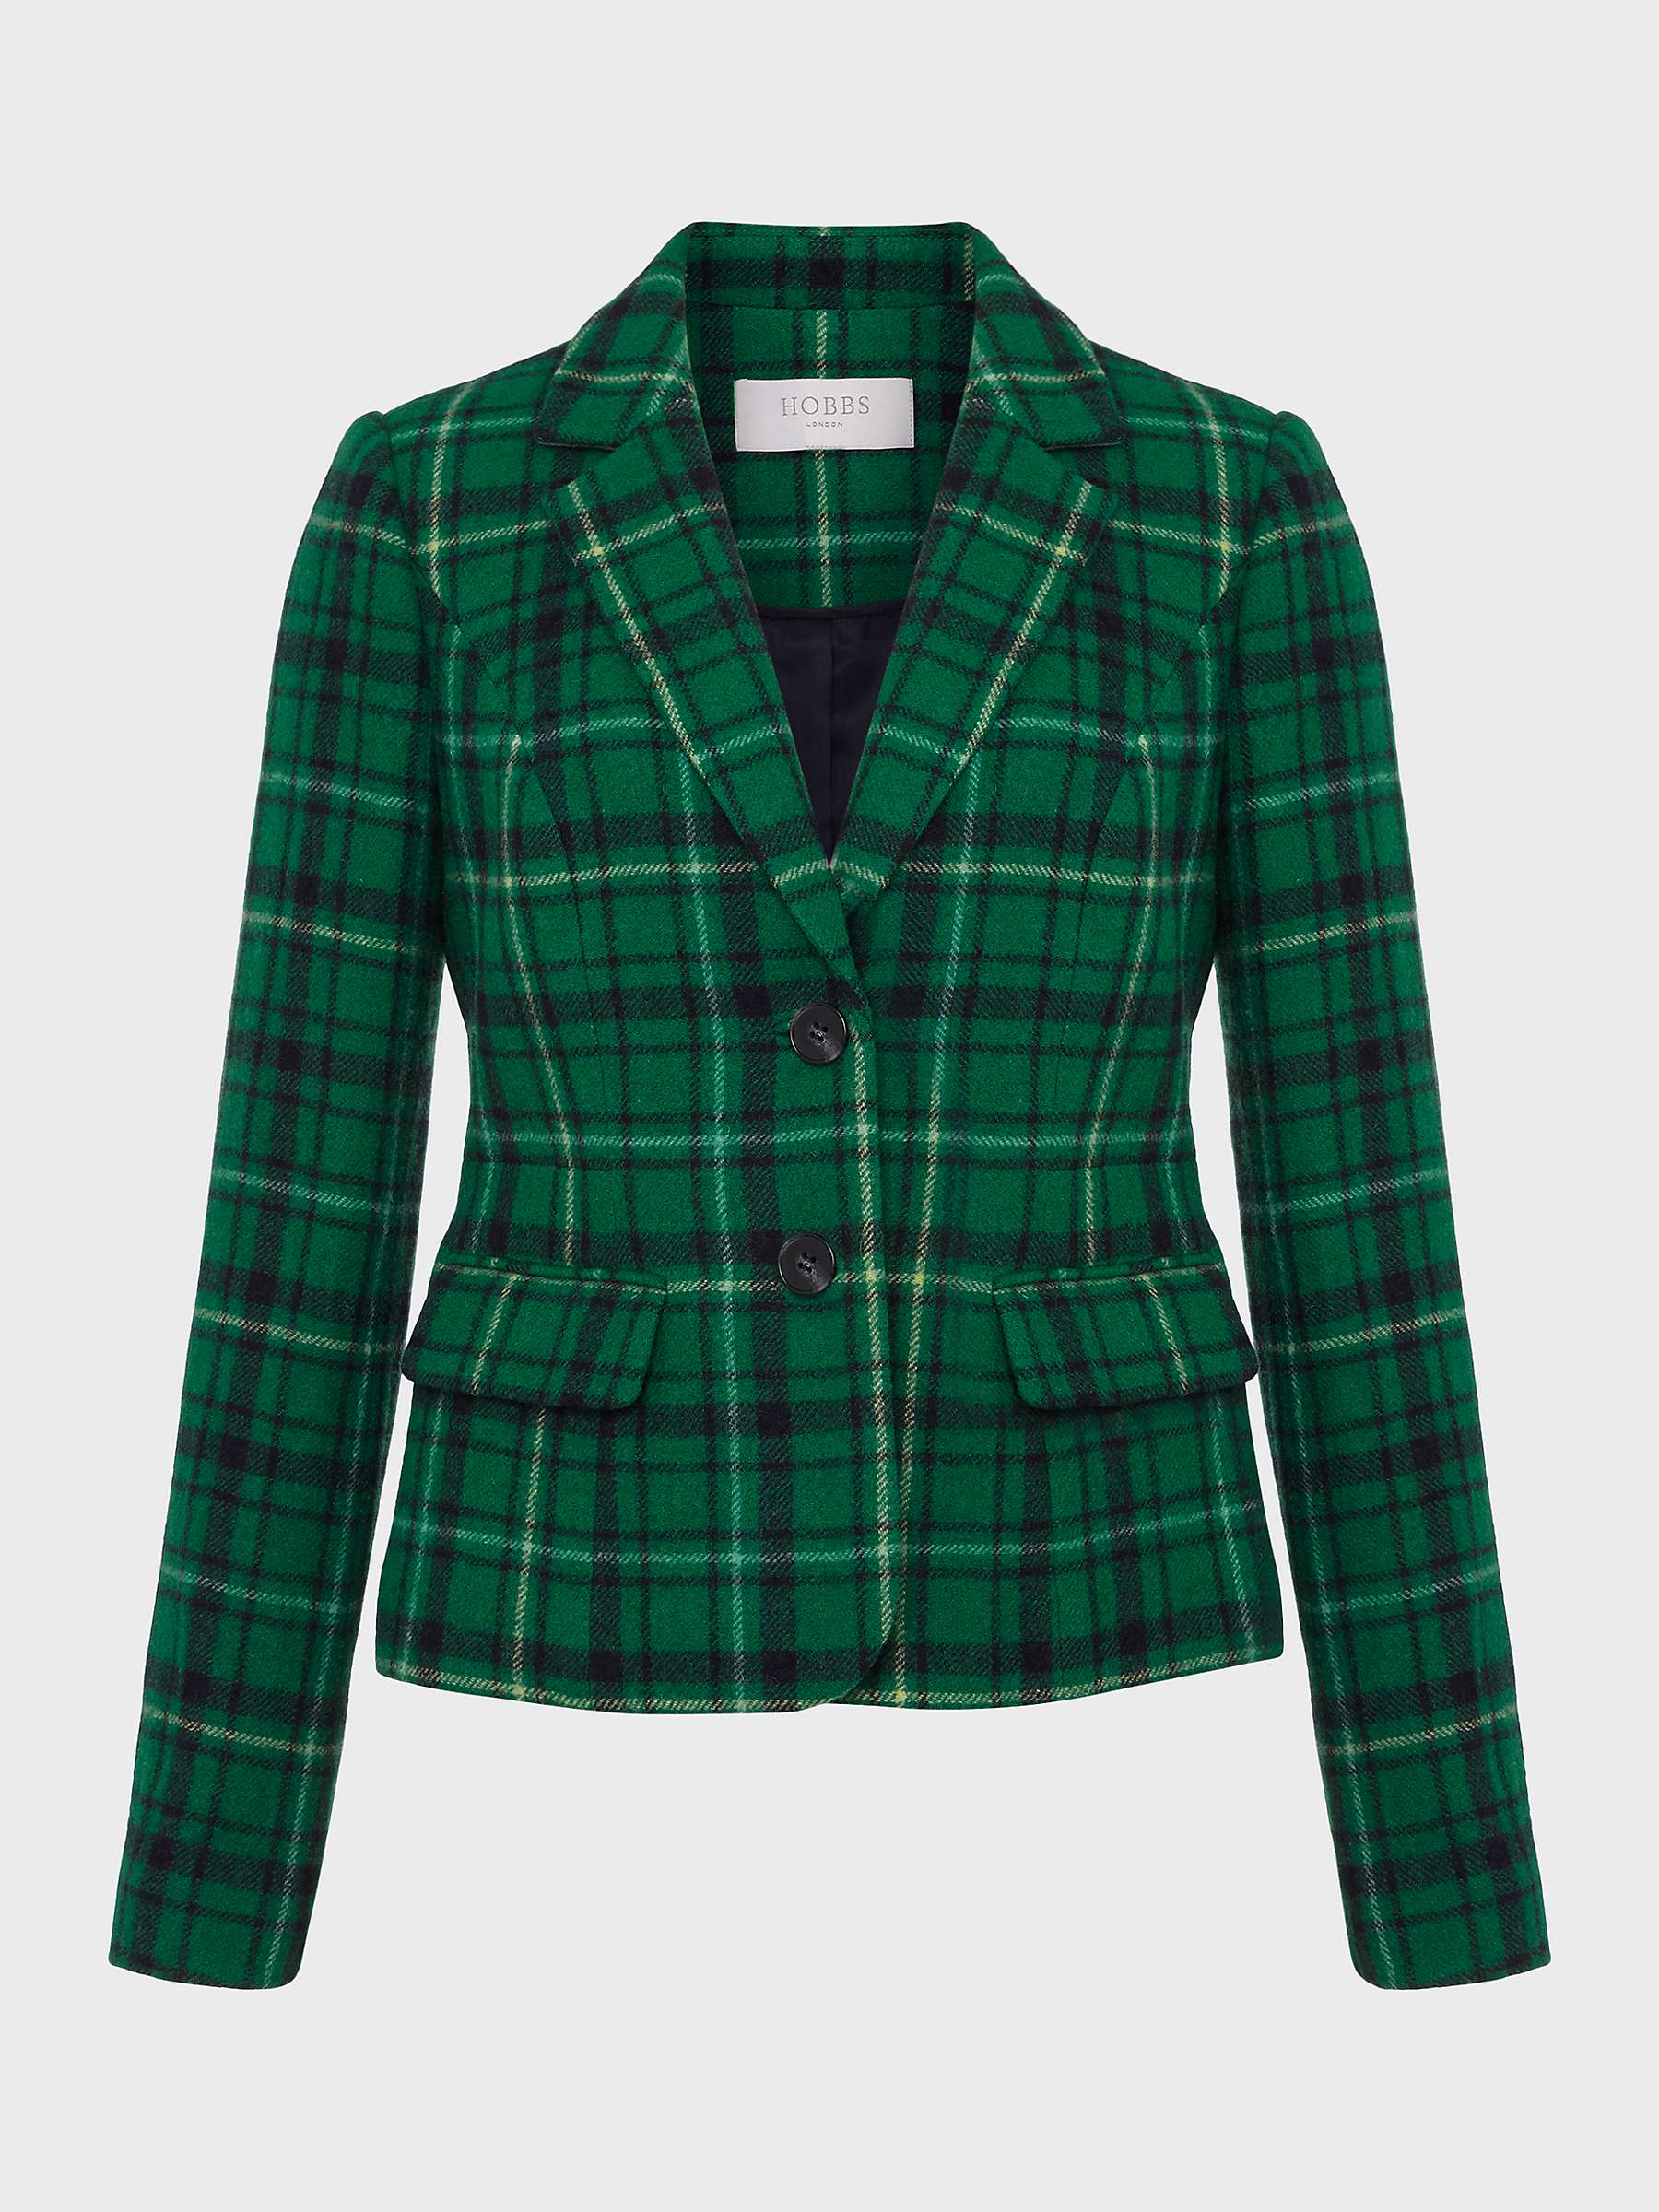 Buy Hobbs Hackness Checked Wool Tweed Jacket, Green/Multi Online at johnlewis.com